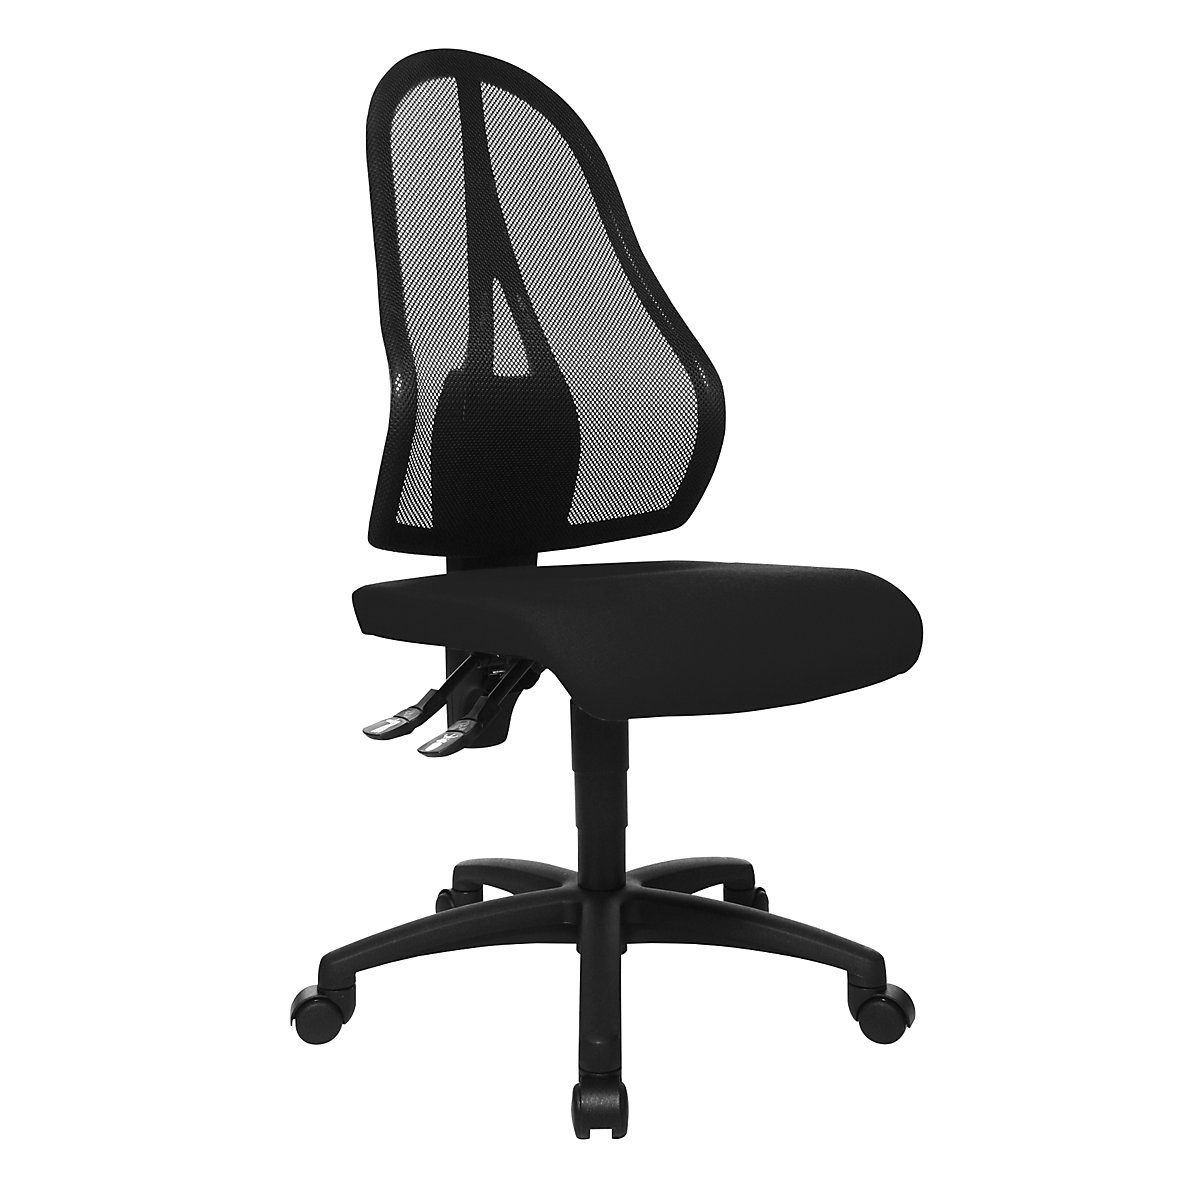 Cadeira giratória de escritório OPEN POINT P – Topstar, encosto em rede preta, sem apoios para braços, forro preto-3